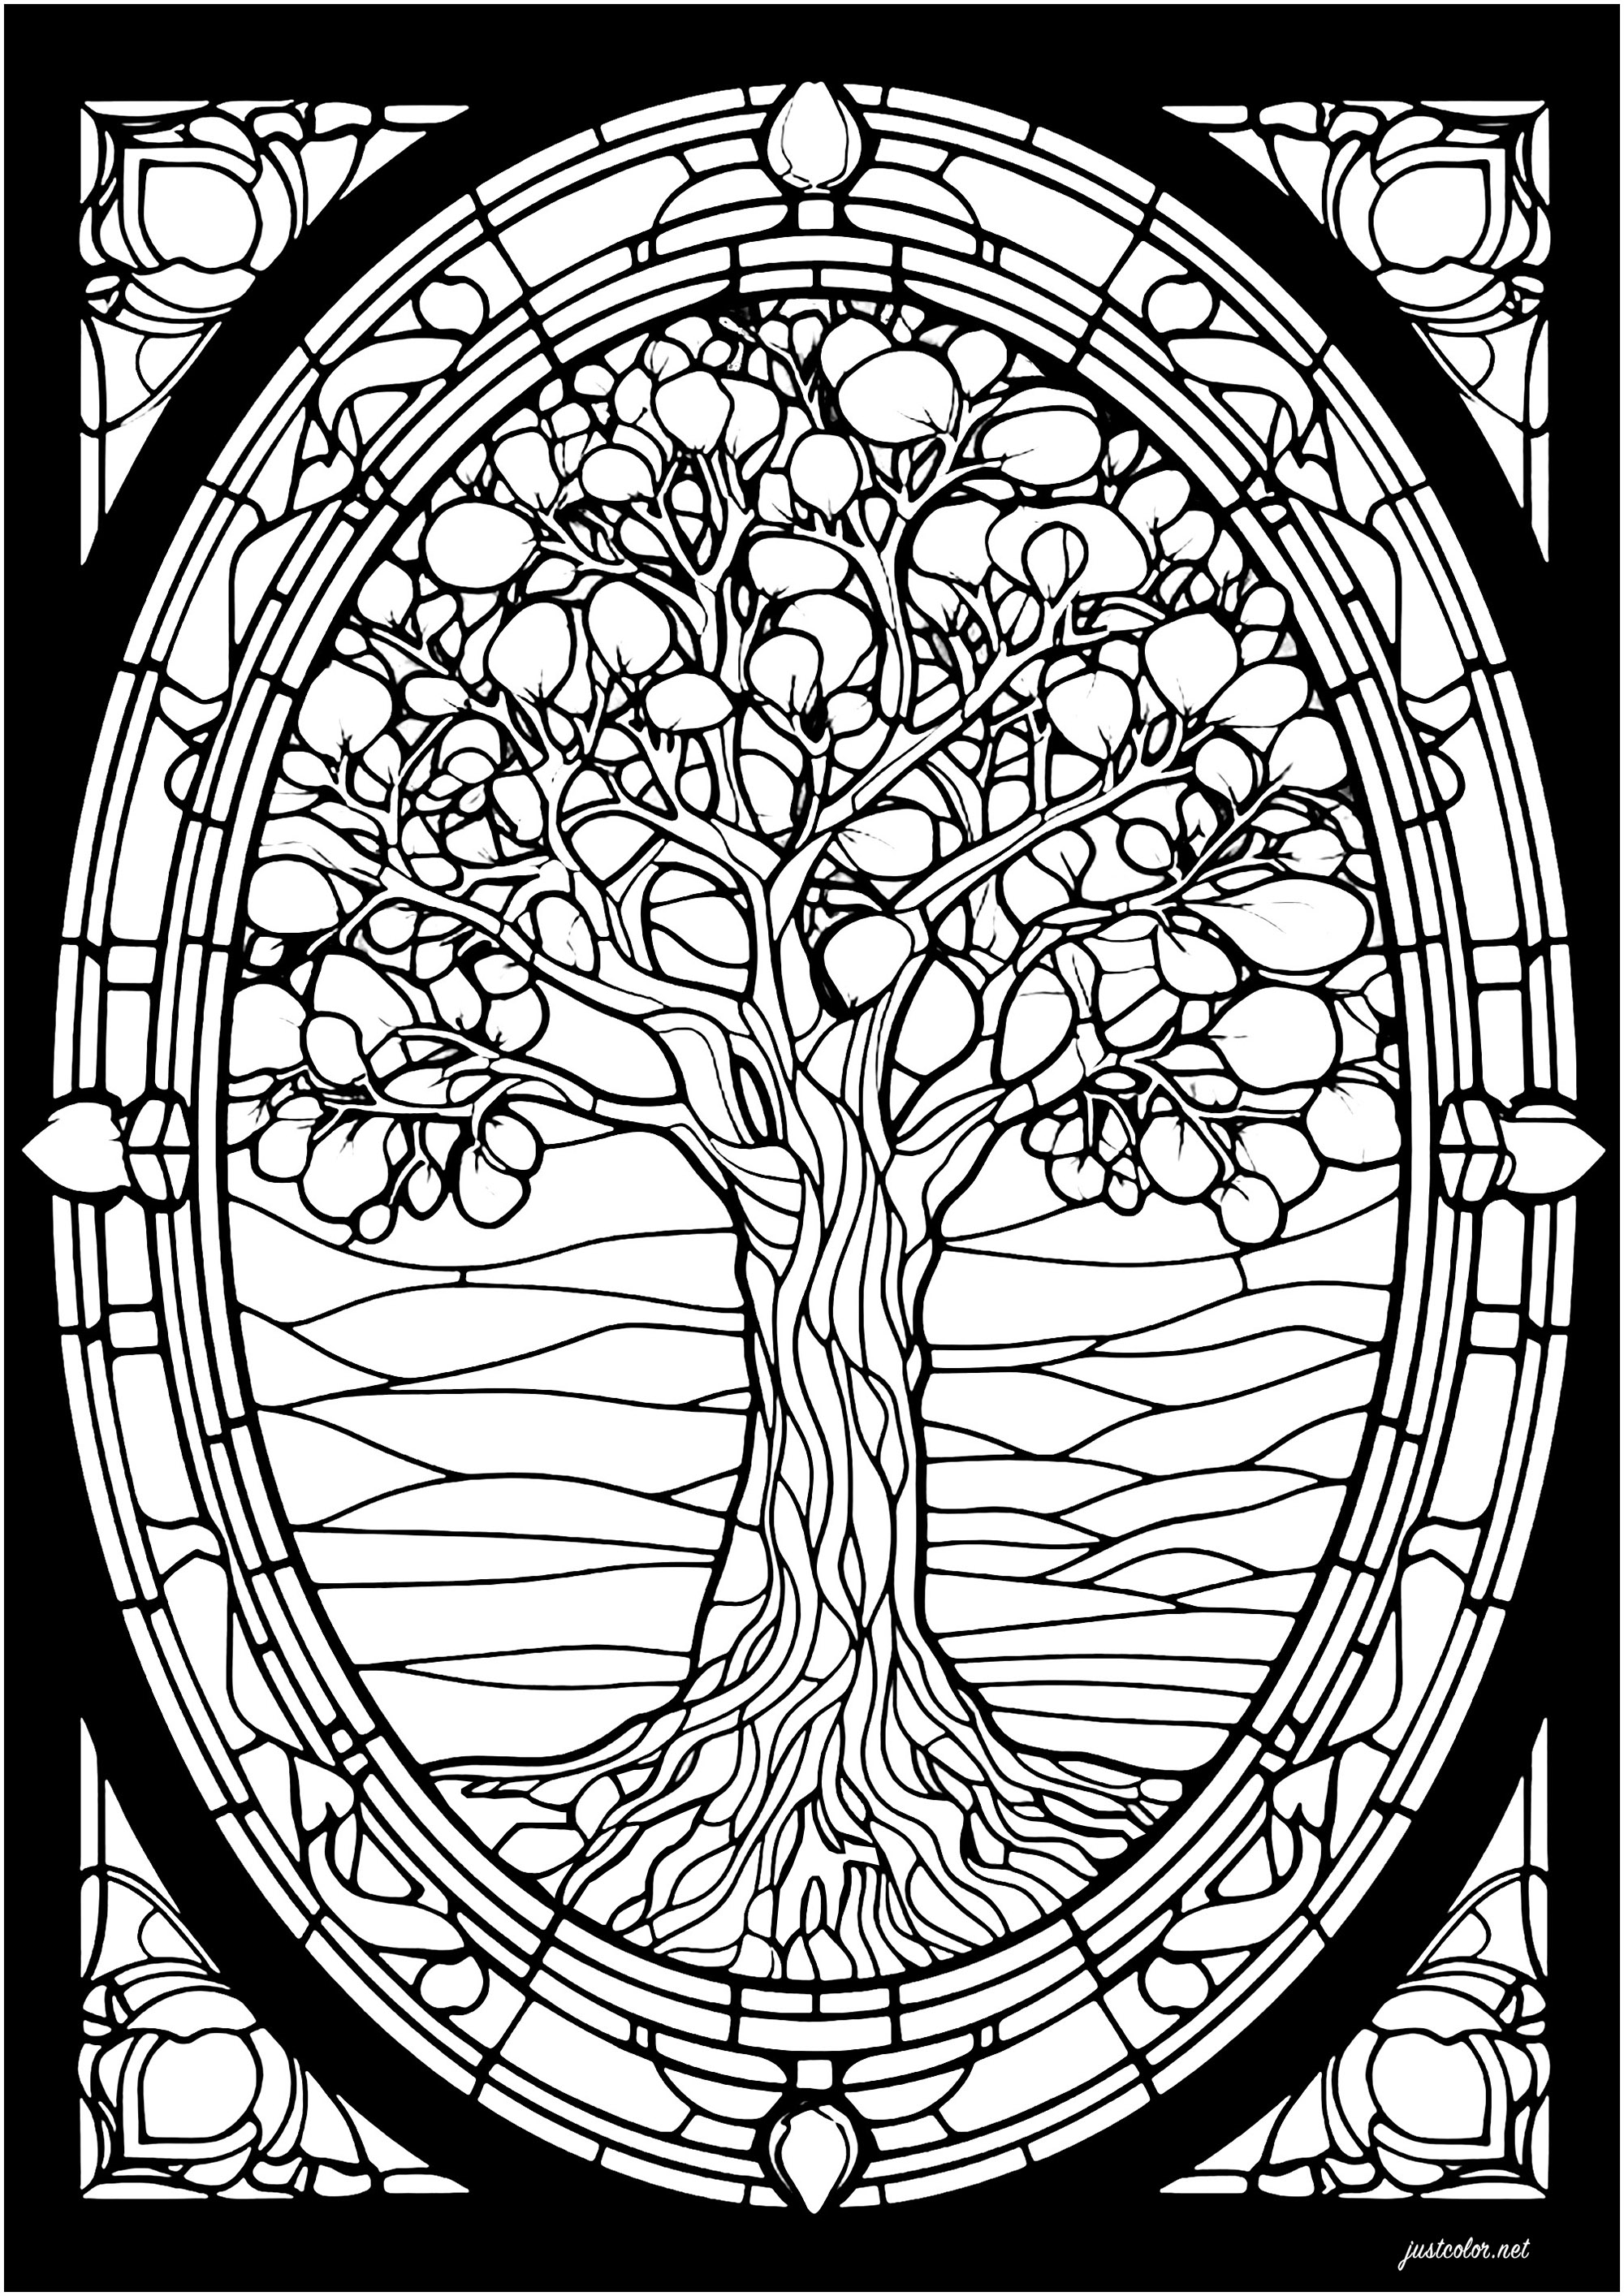 Vitrail représentant un arbre. Un arbre majestueux avec des motifs complexes à colorier